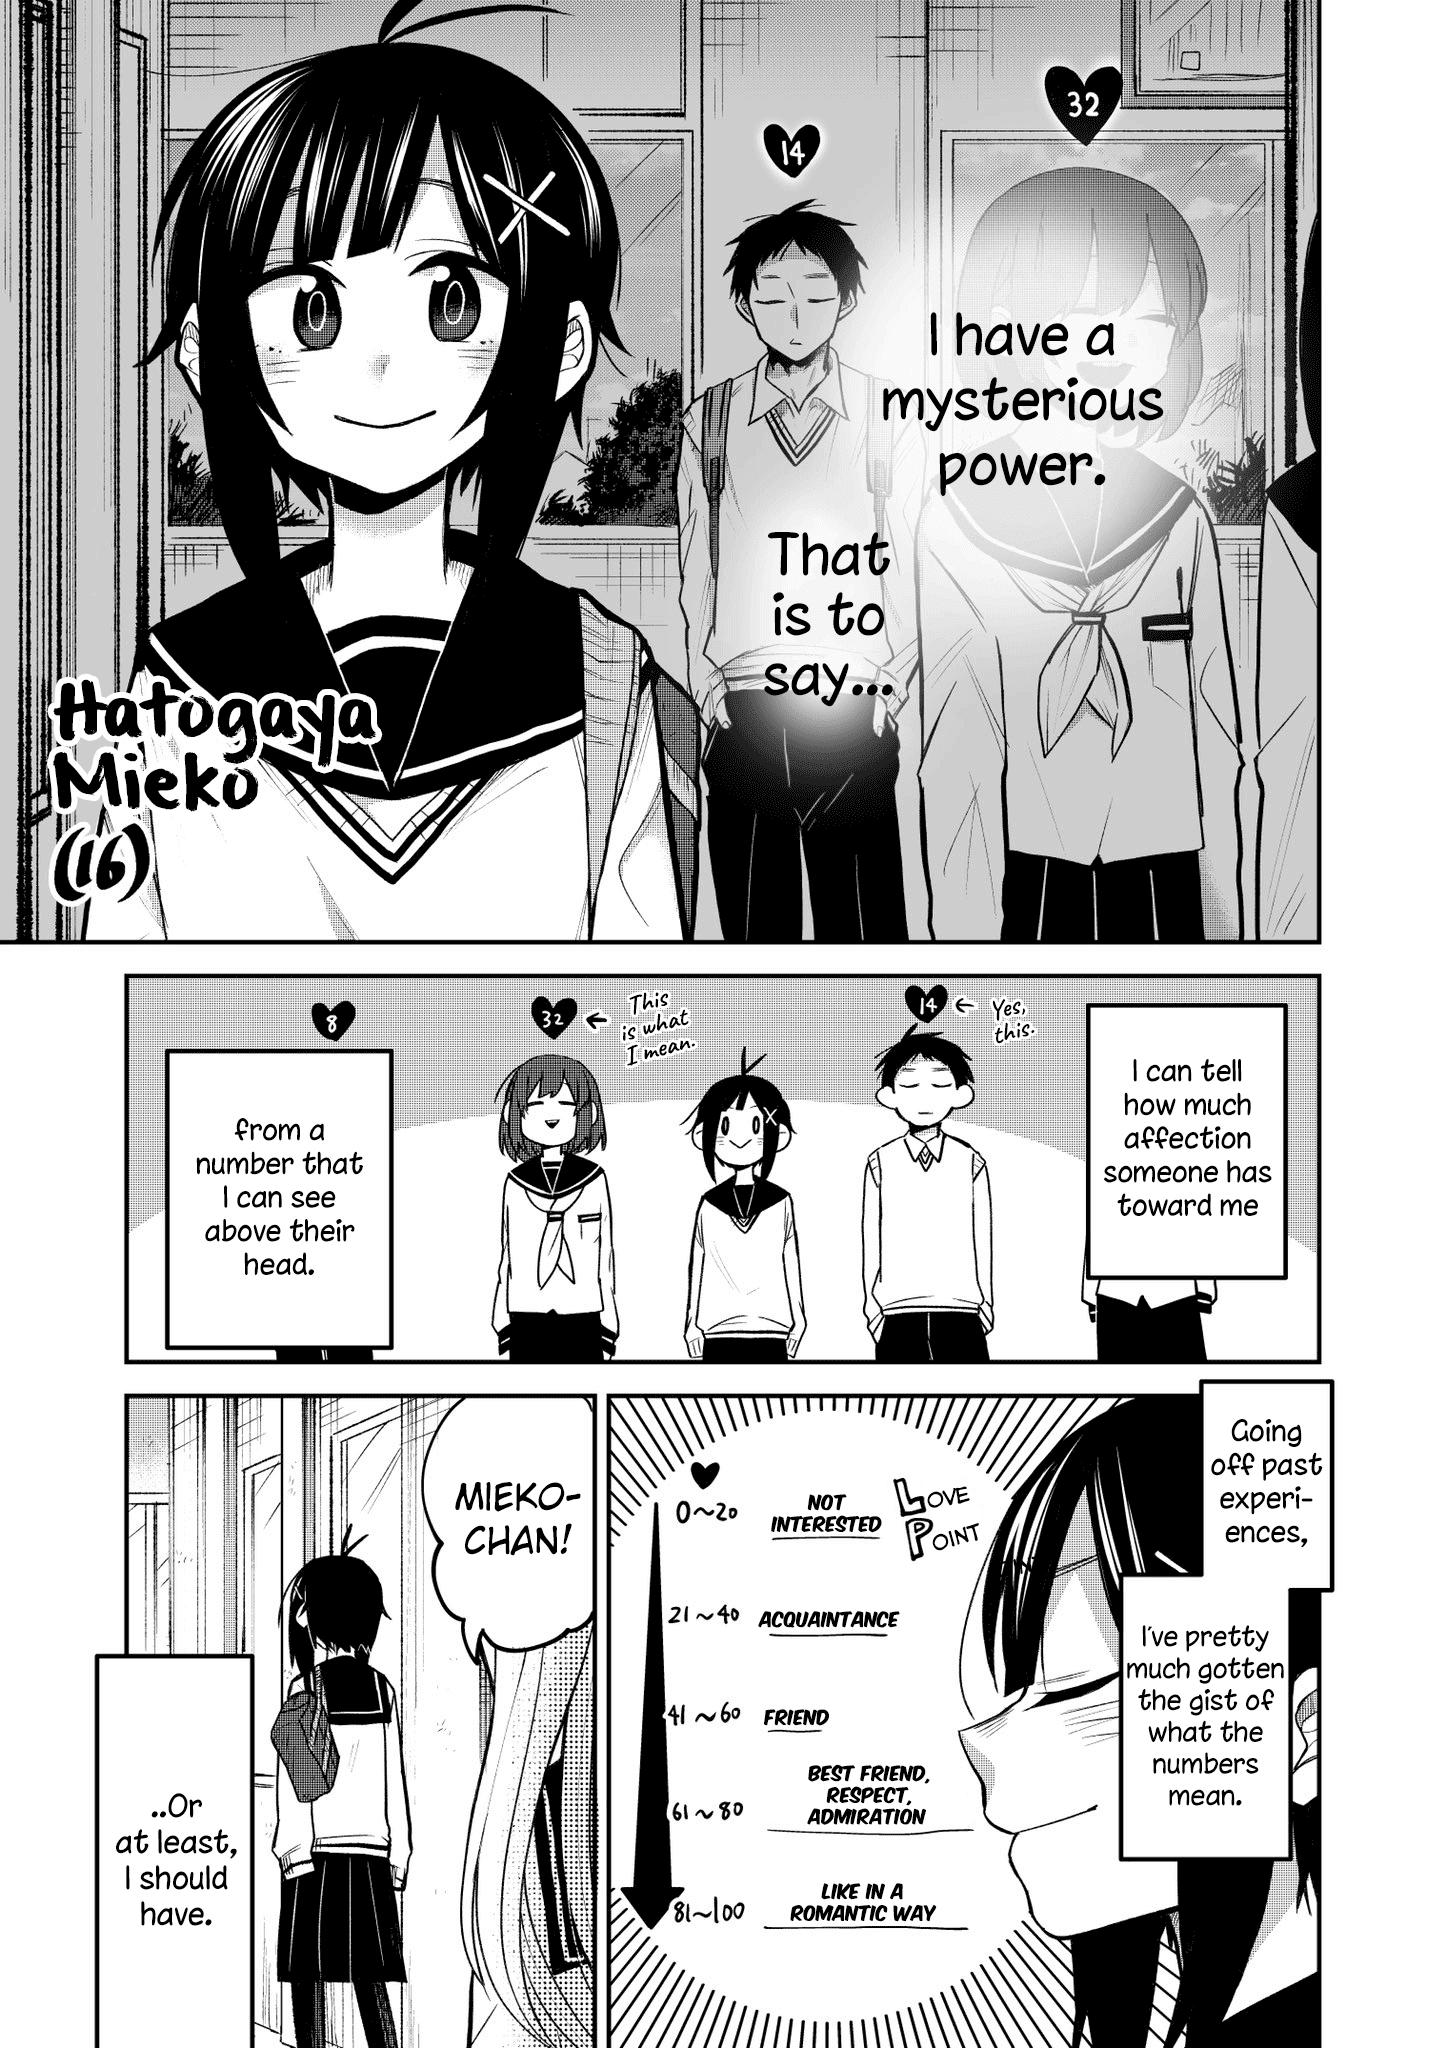 Read Infinity Manga on Mangakakalot